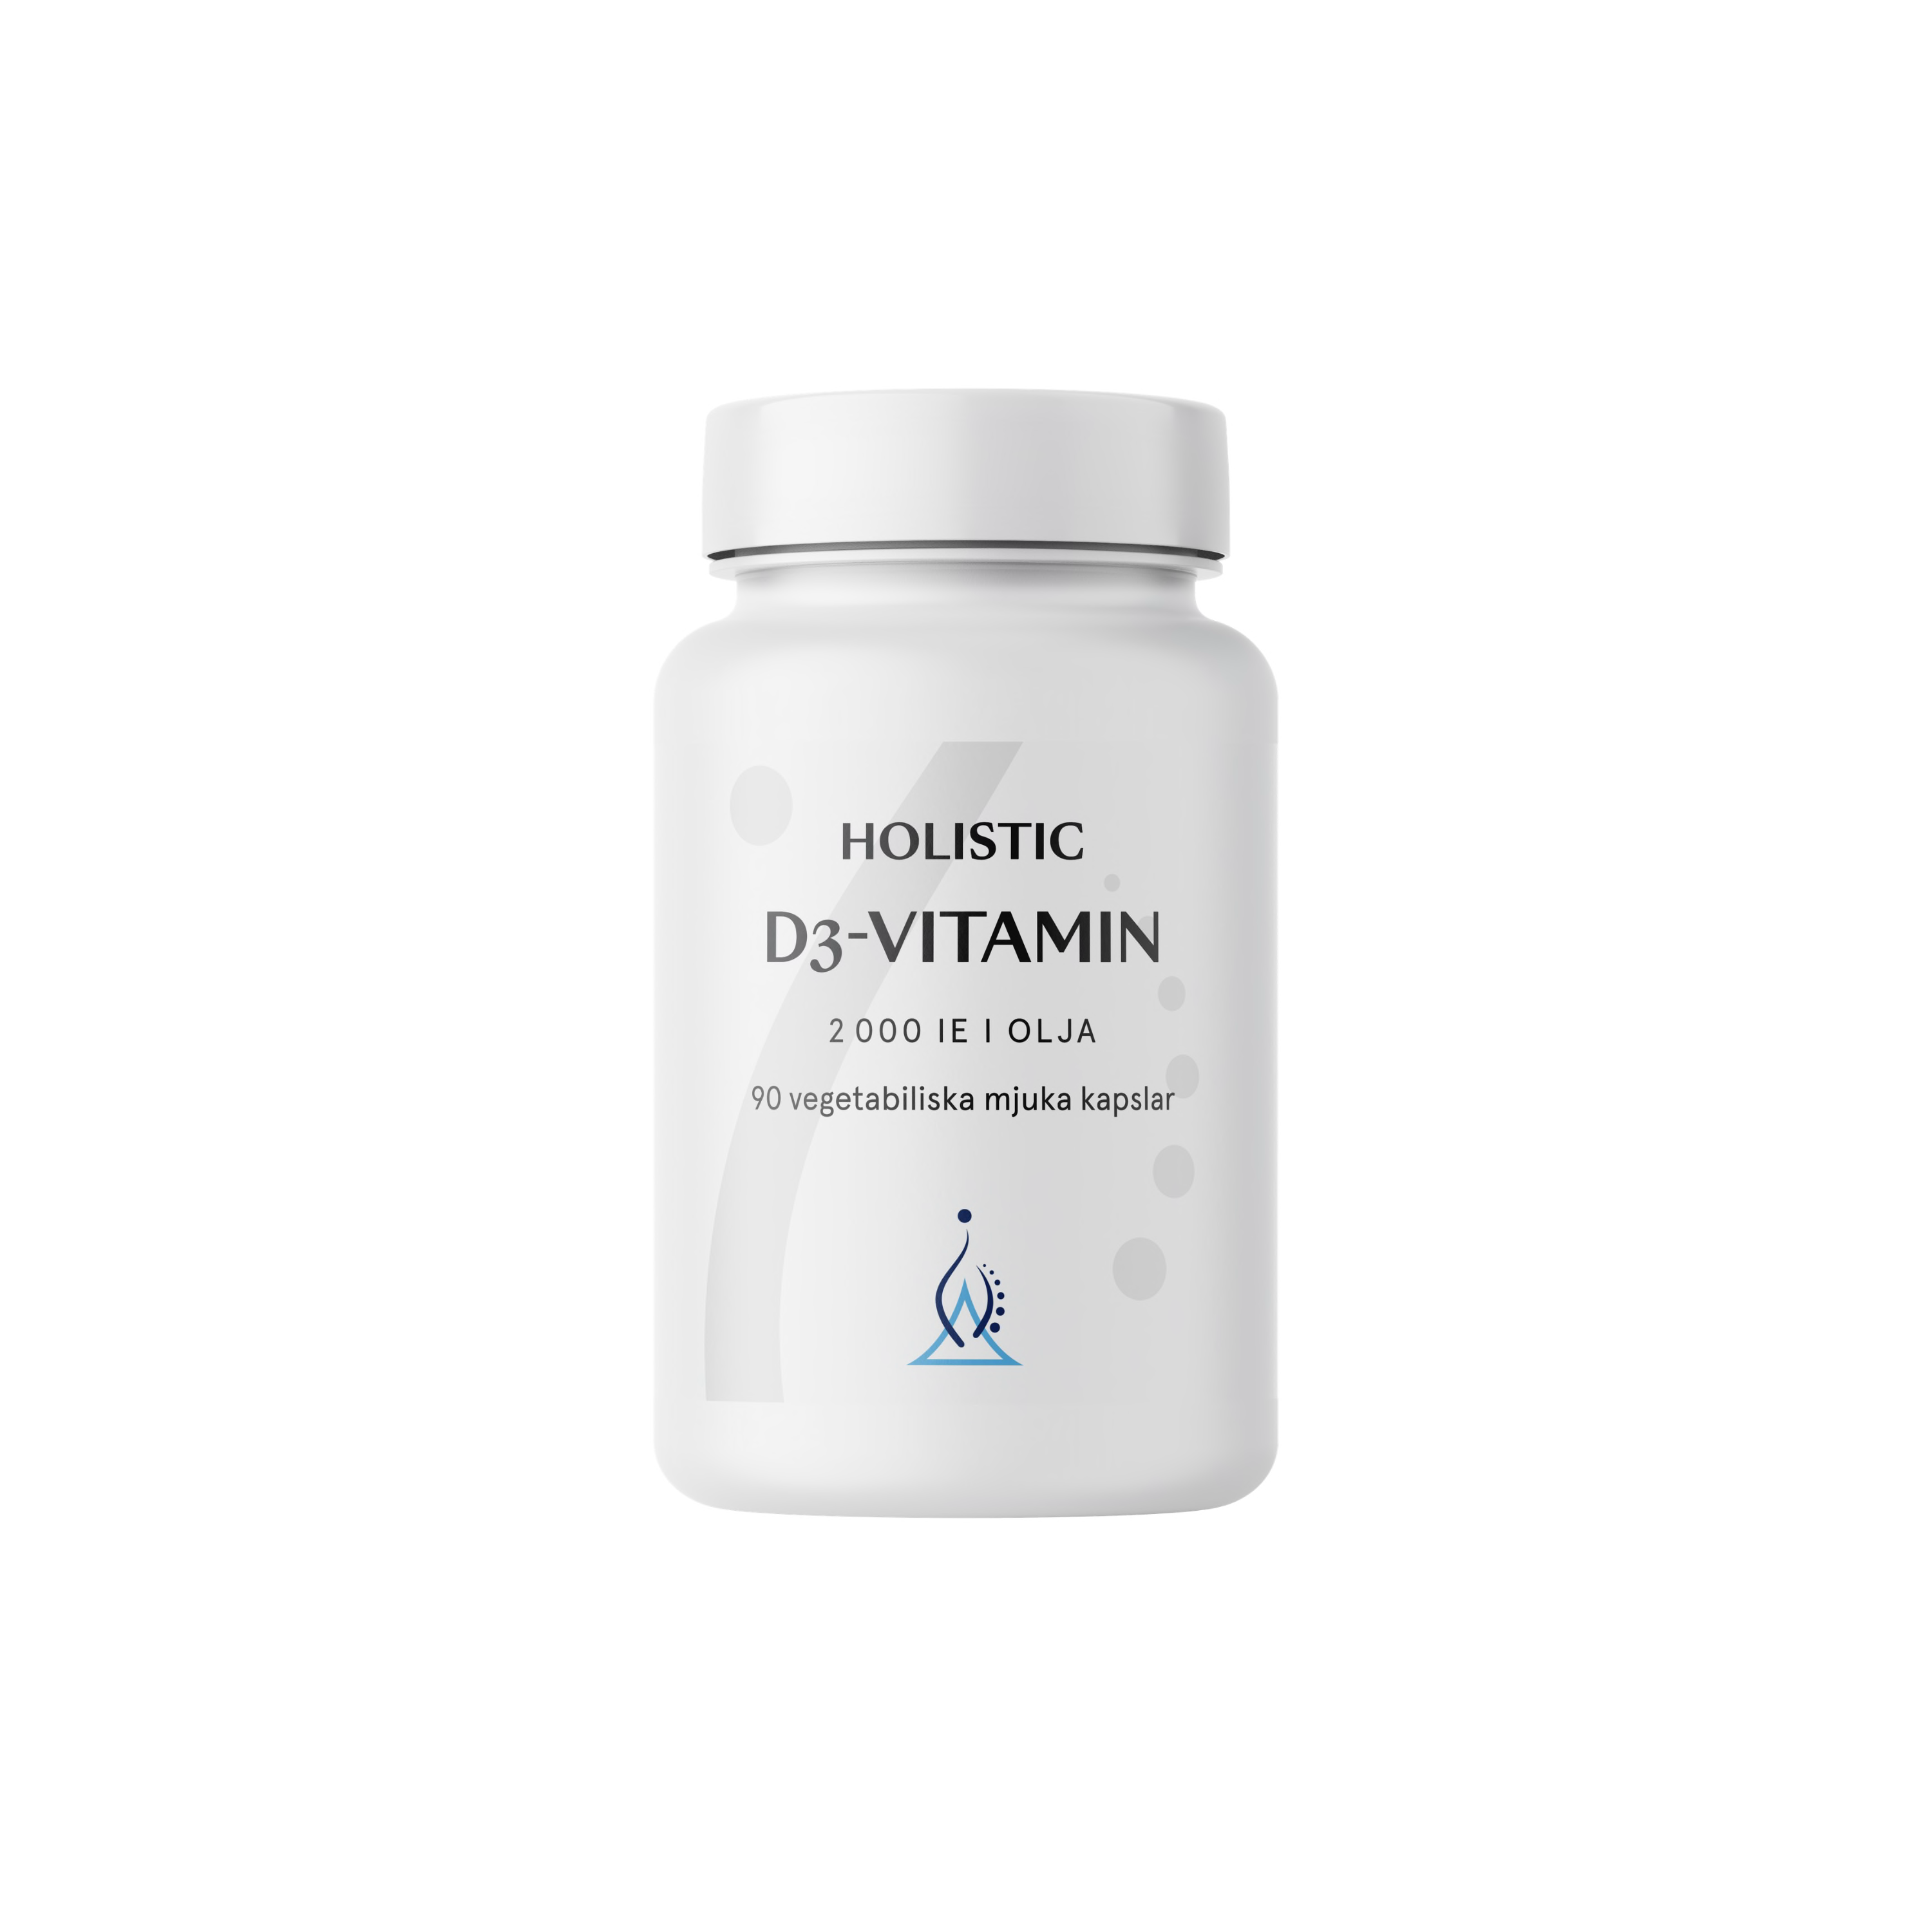 D3-vitamin 2000IE i olja 90k